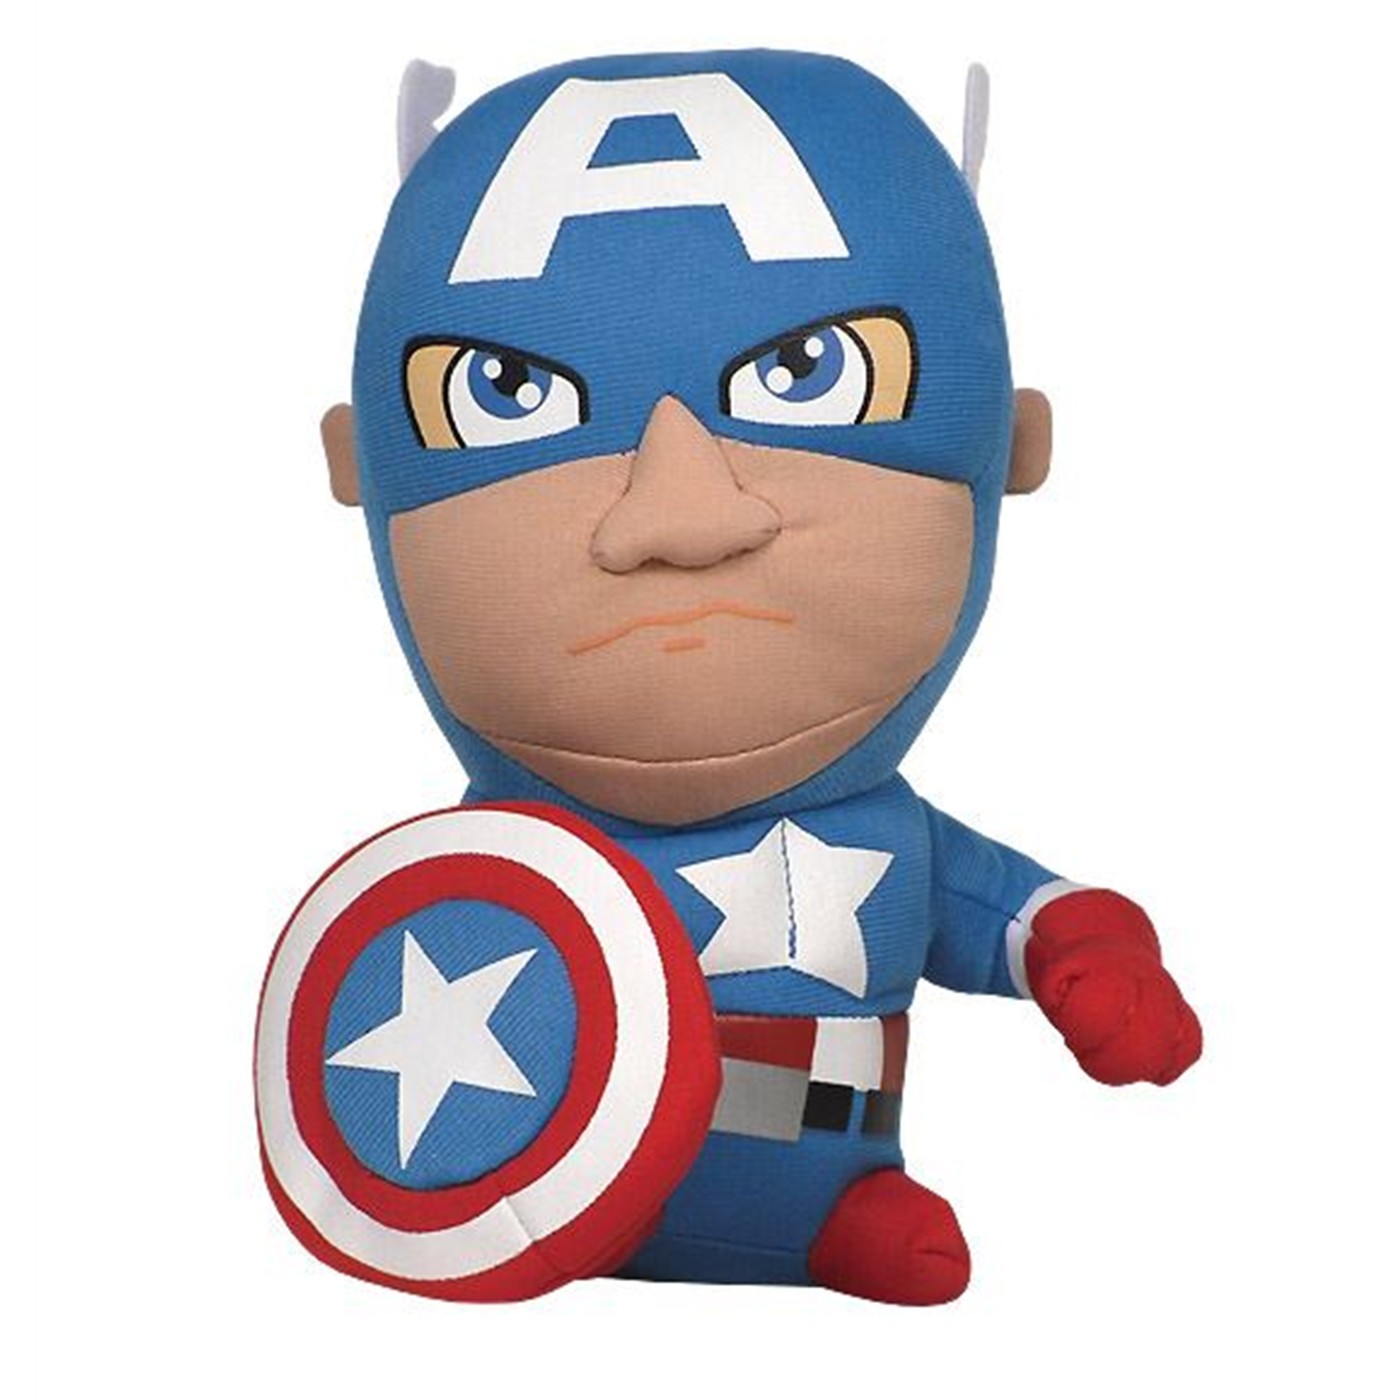 Captain America Super Deformed Plush Toy